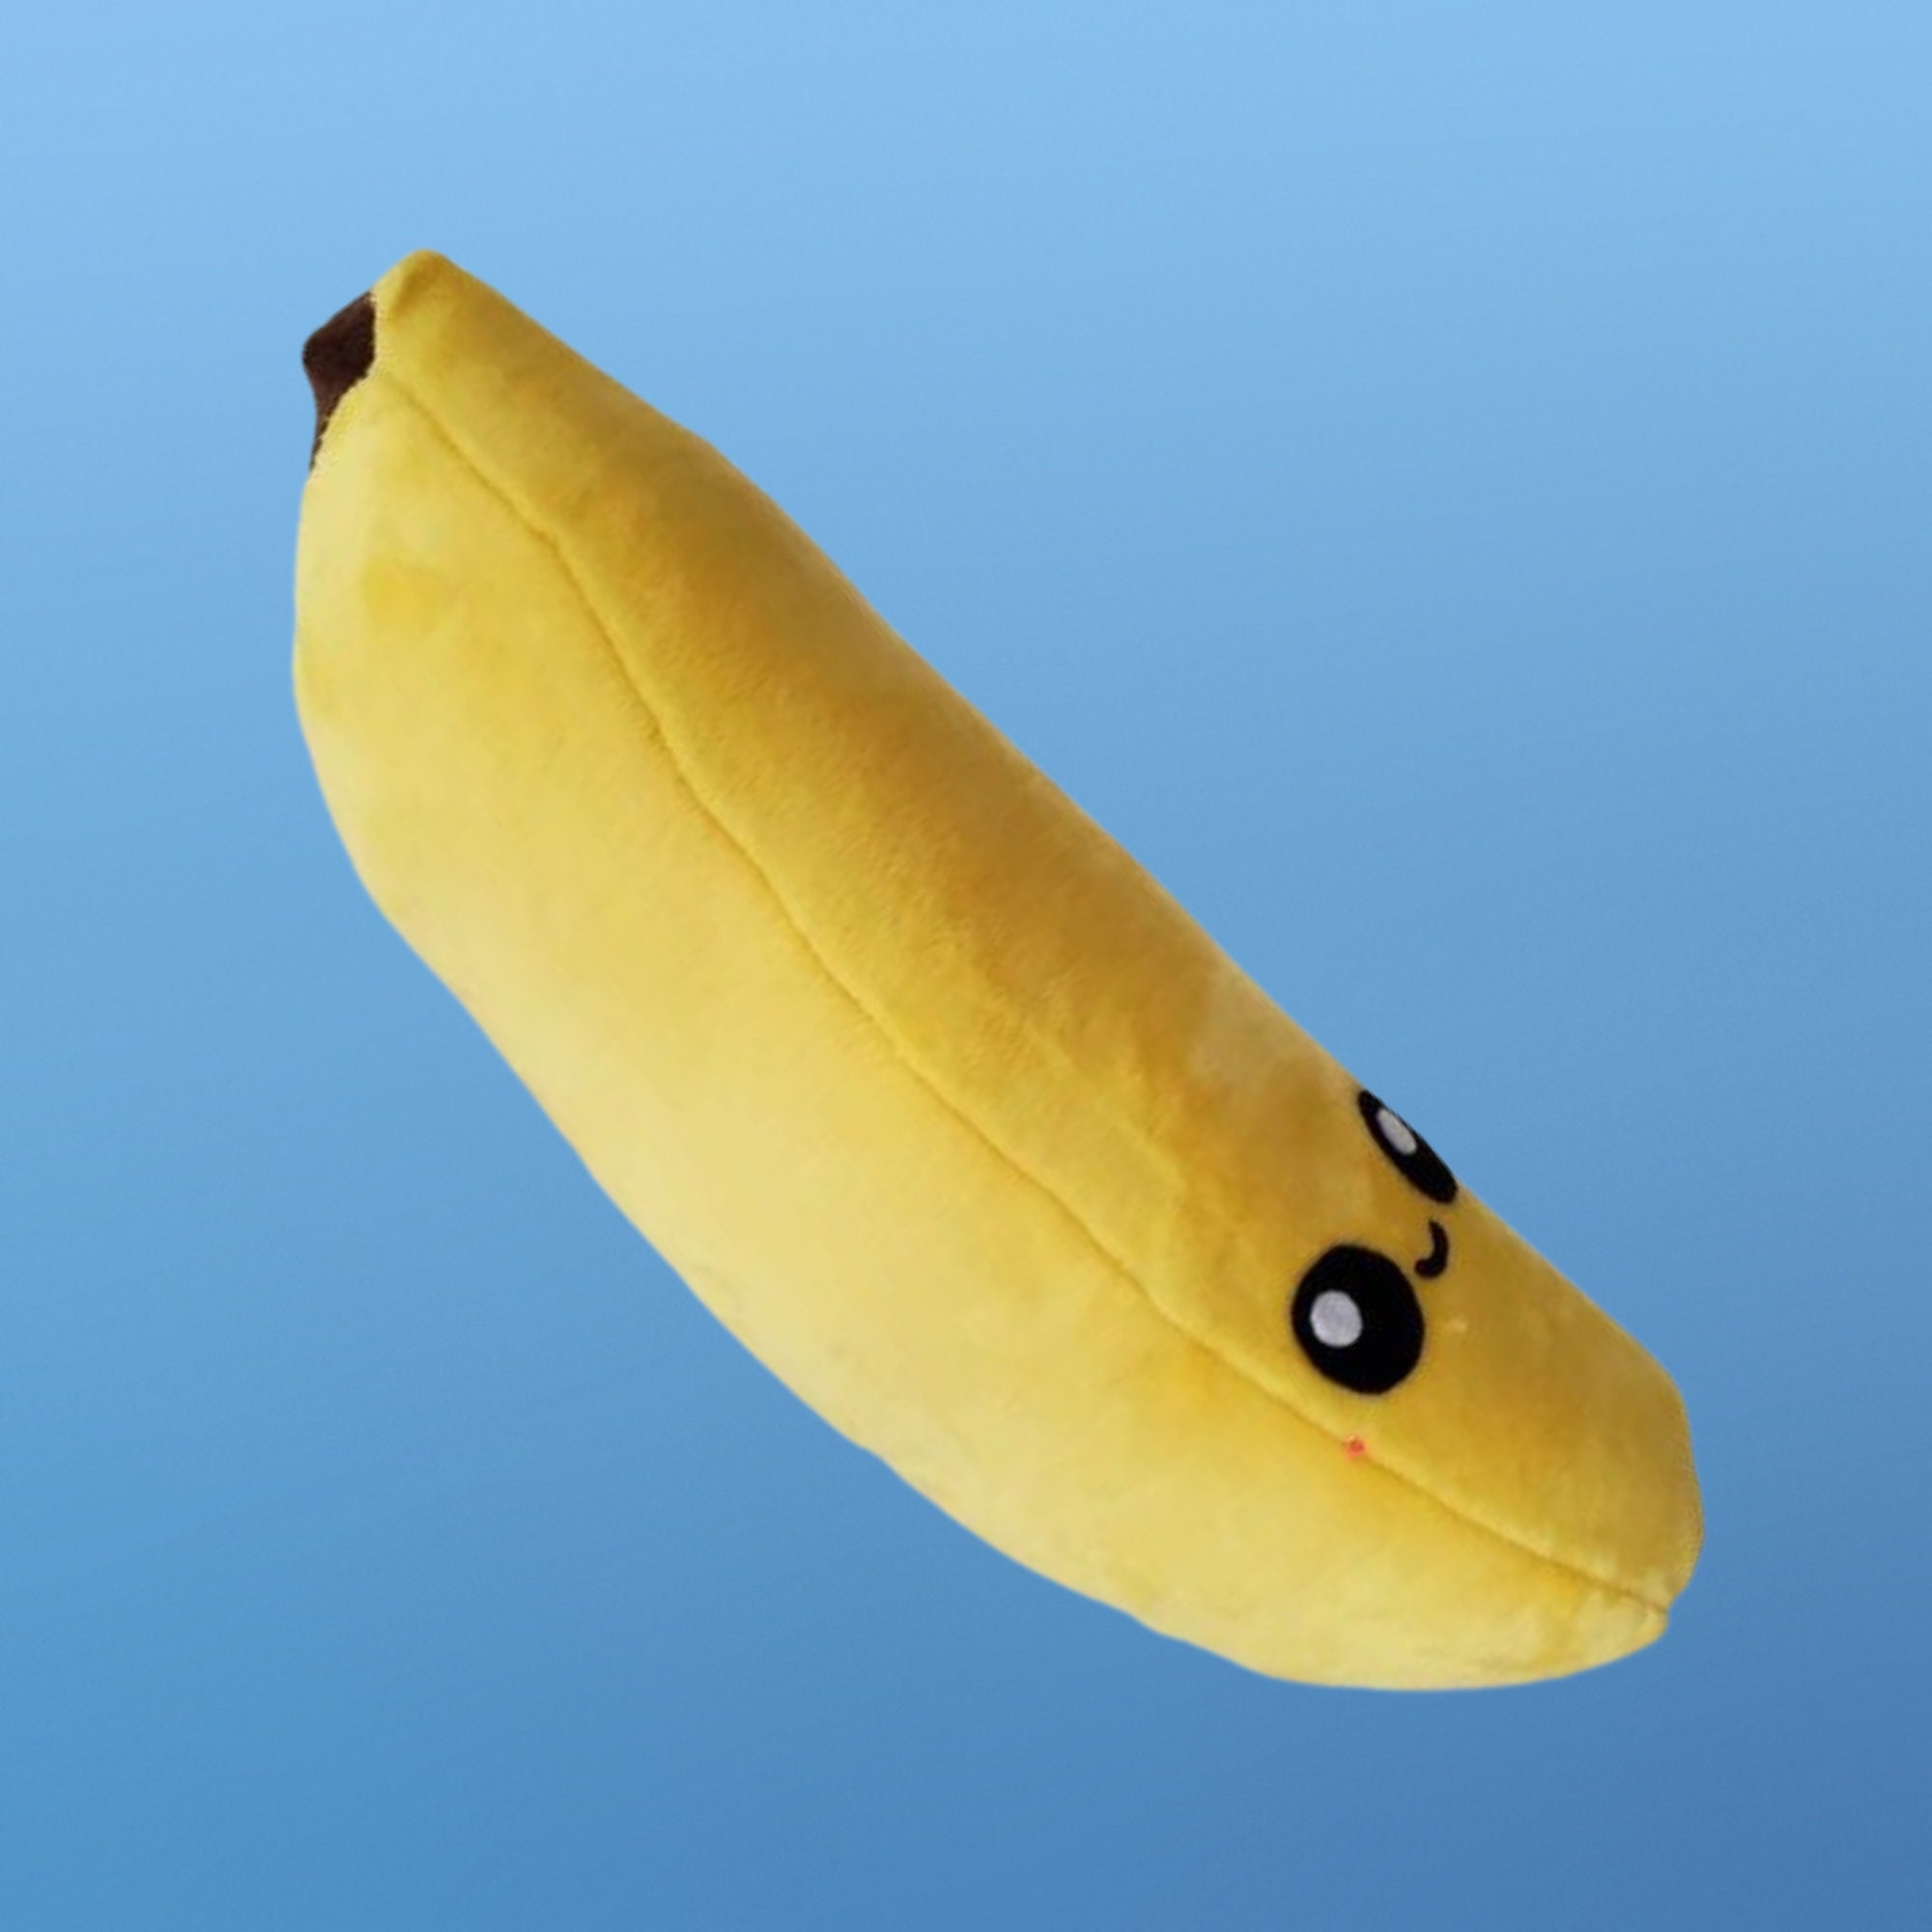 Kawaii Banana Plush